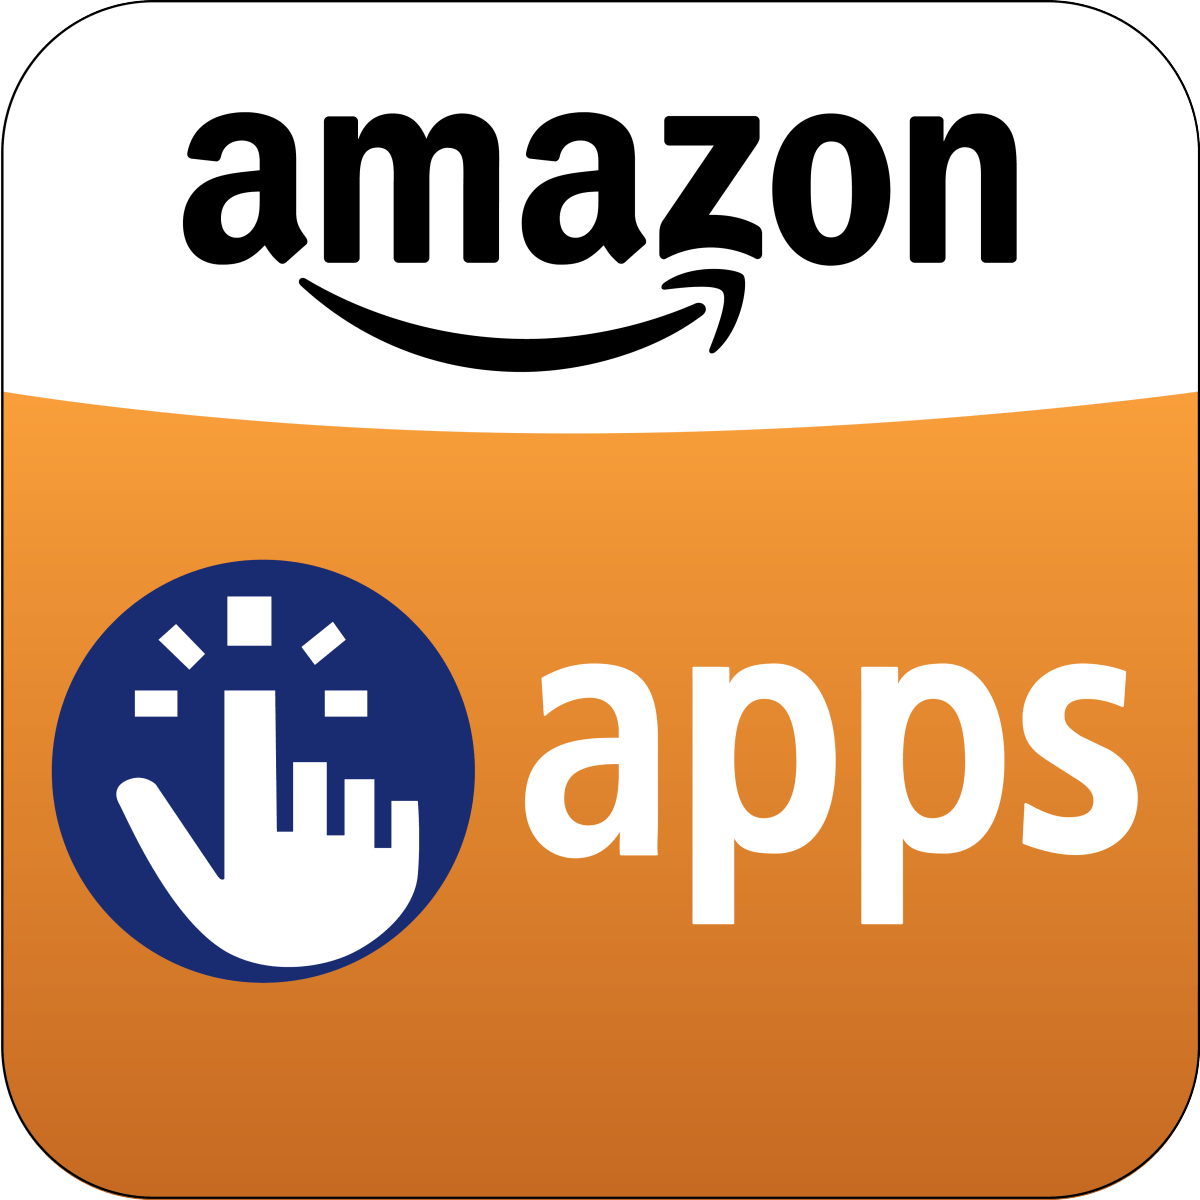 Amazon App Store Logo - Amazon App Store Logo - EpicDroid